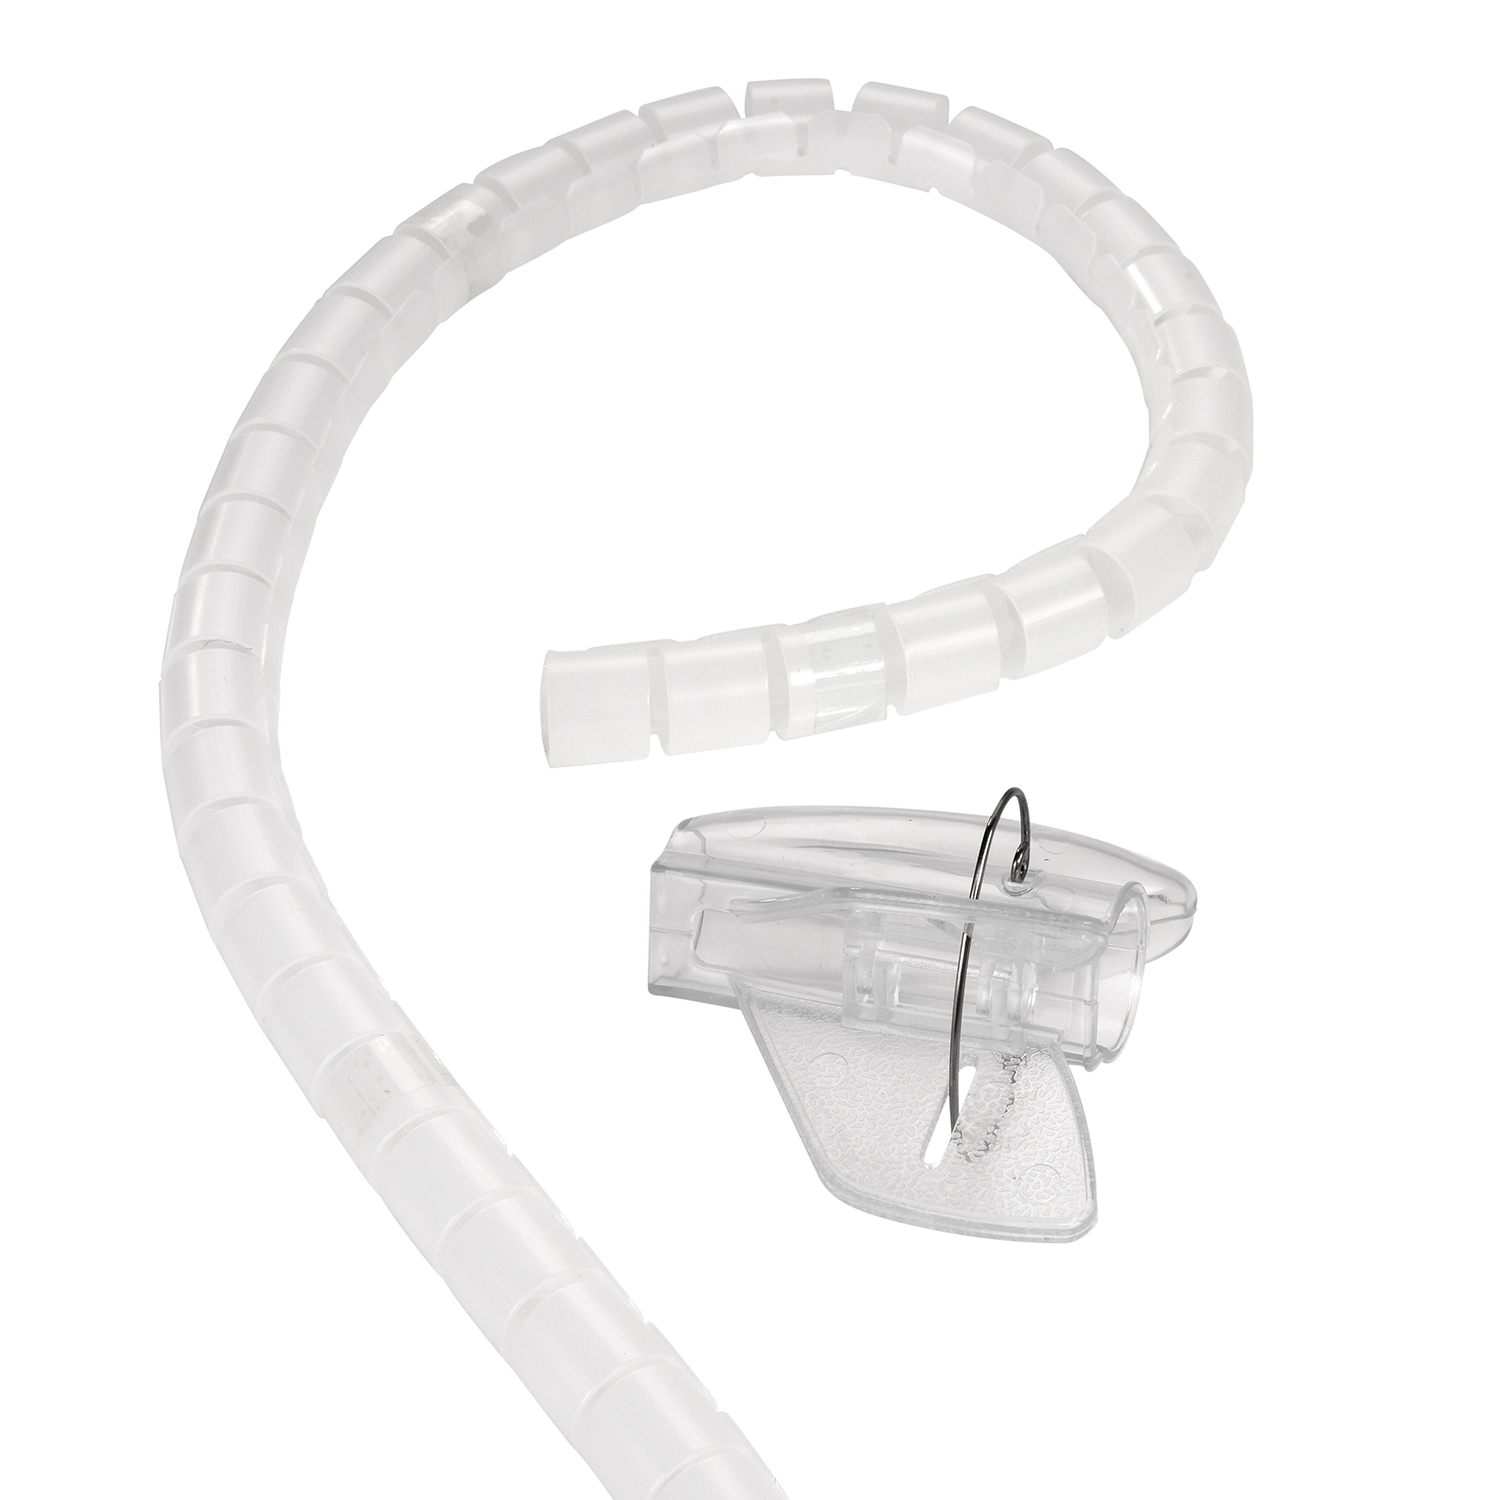 Kabelschlauch, Spiral-Kabelschlauch Transparent Premium 1,5m TPFNET Transparent, 30mm, Einfädelhilfe, mit